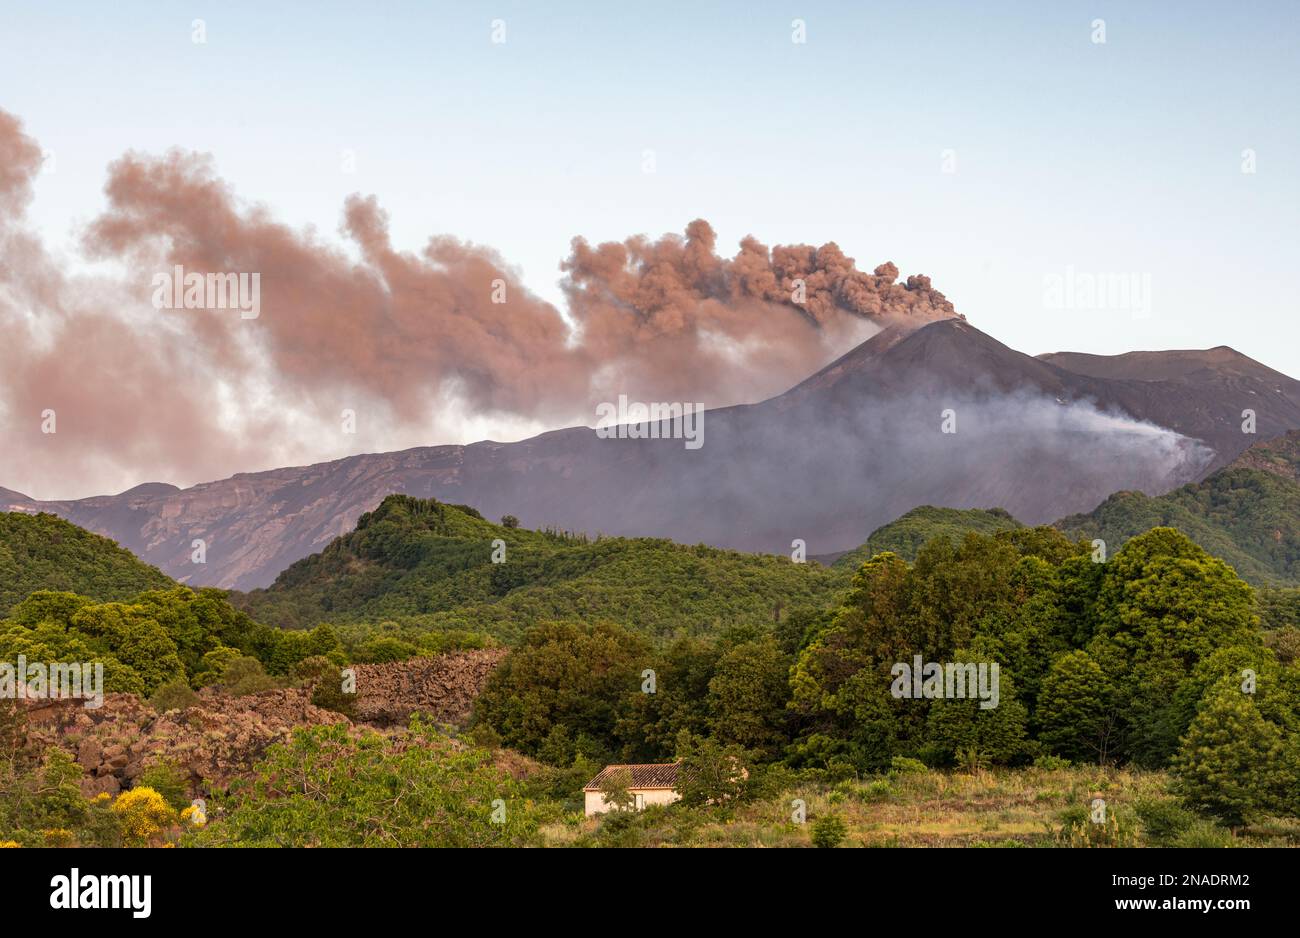 Vaste nuvole di cenere vulcanica e gas tossico che si riversano dal cratere sud-orientale dell'Etna, in Sicilia, a seguito di una piccola eruzione Foto Stock